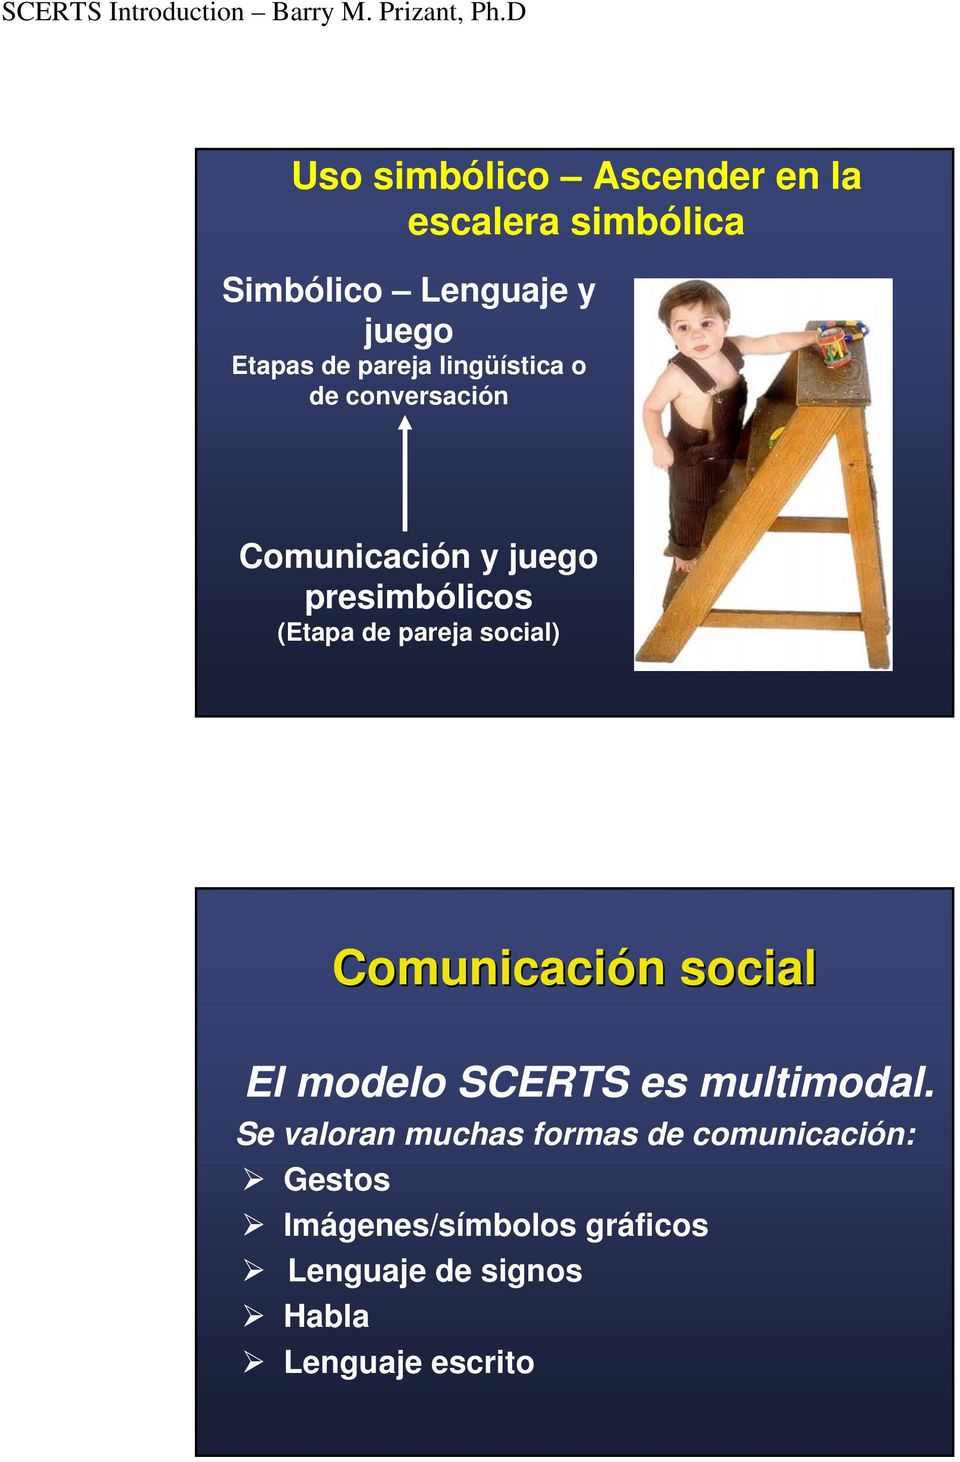 social) Comunicación n social El modelo SCERTS es multimodal.